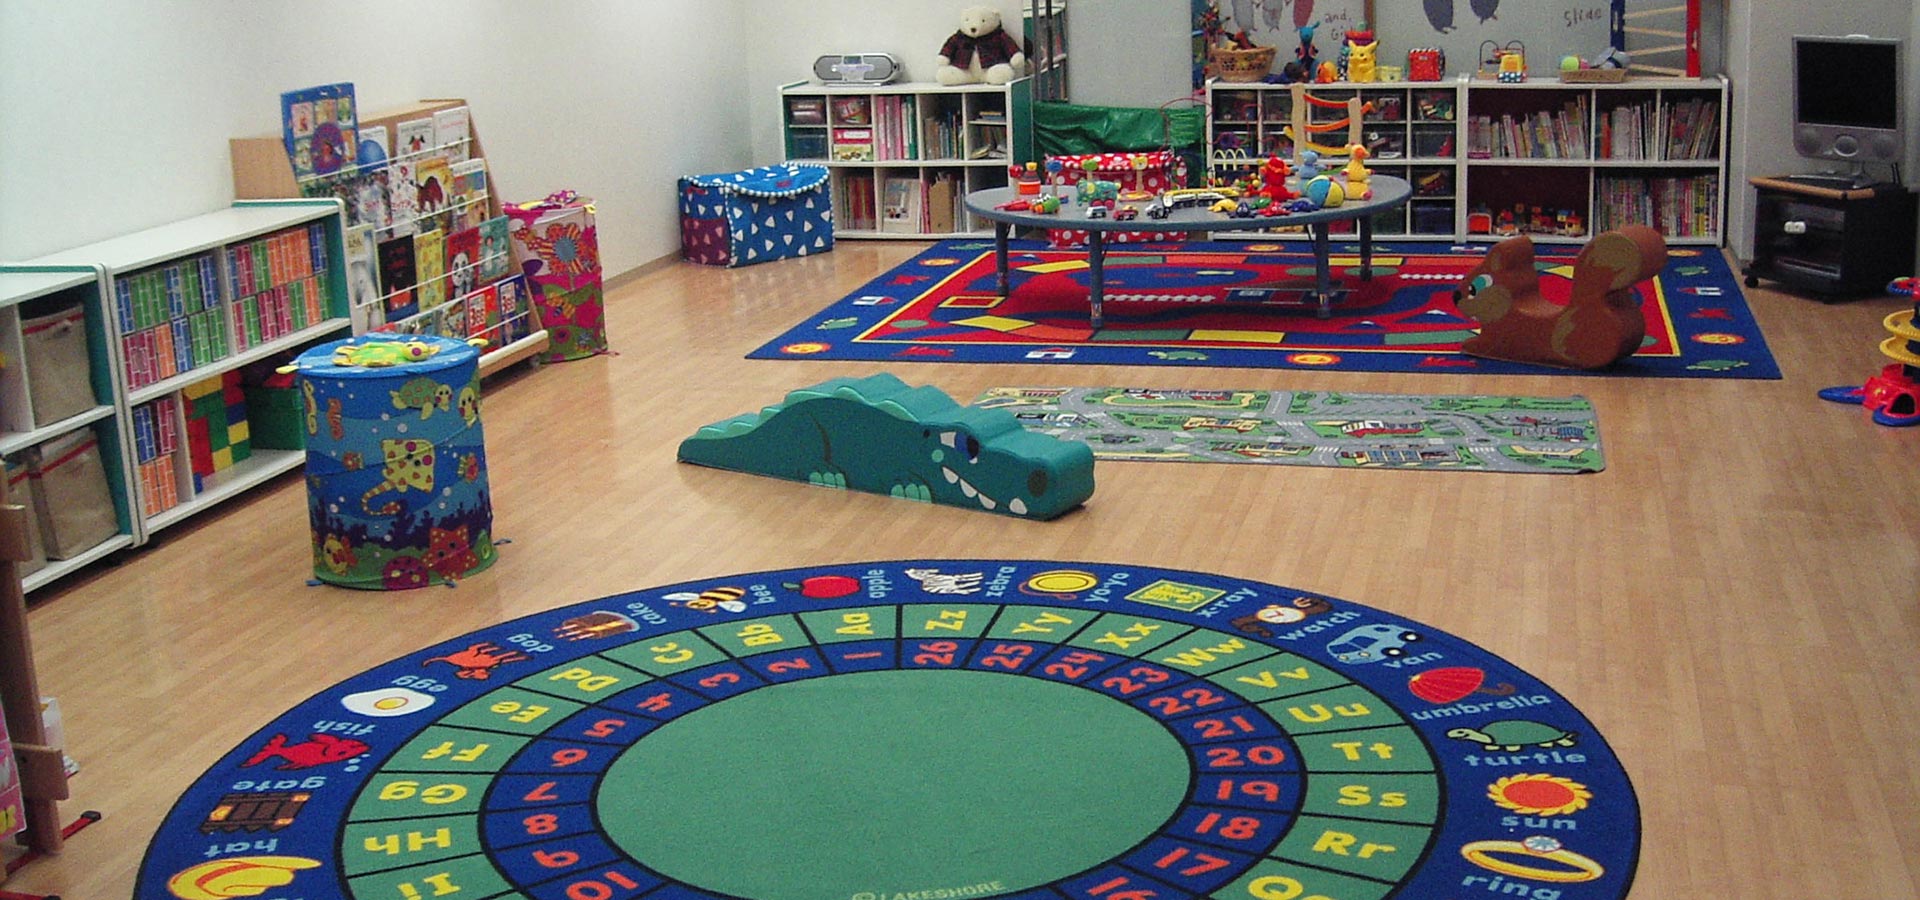 Dakko Room – Day Care Services for Children